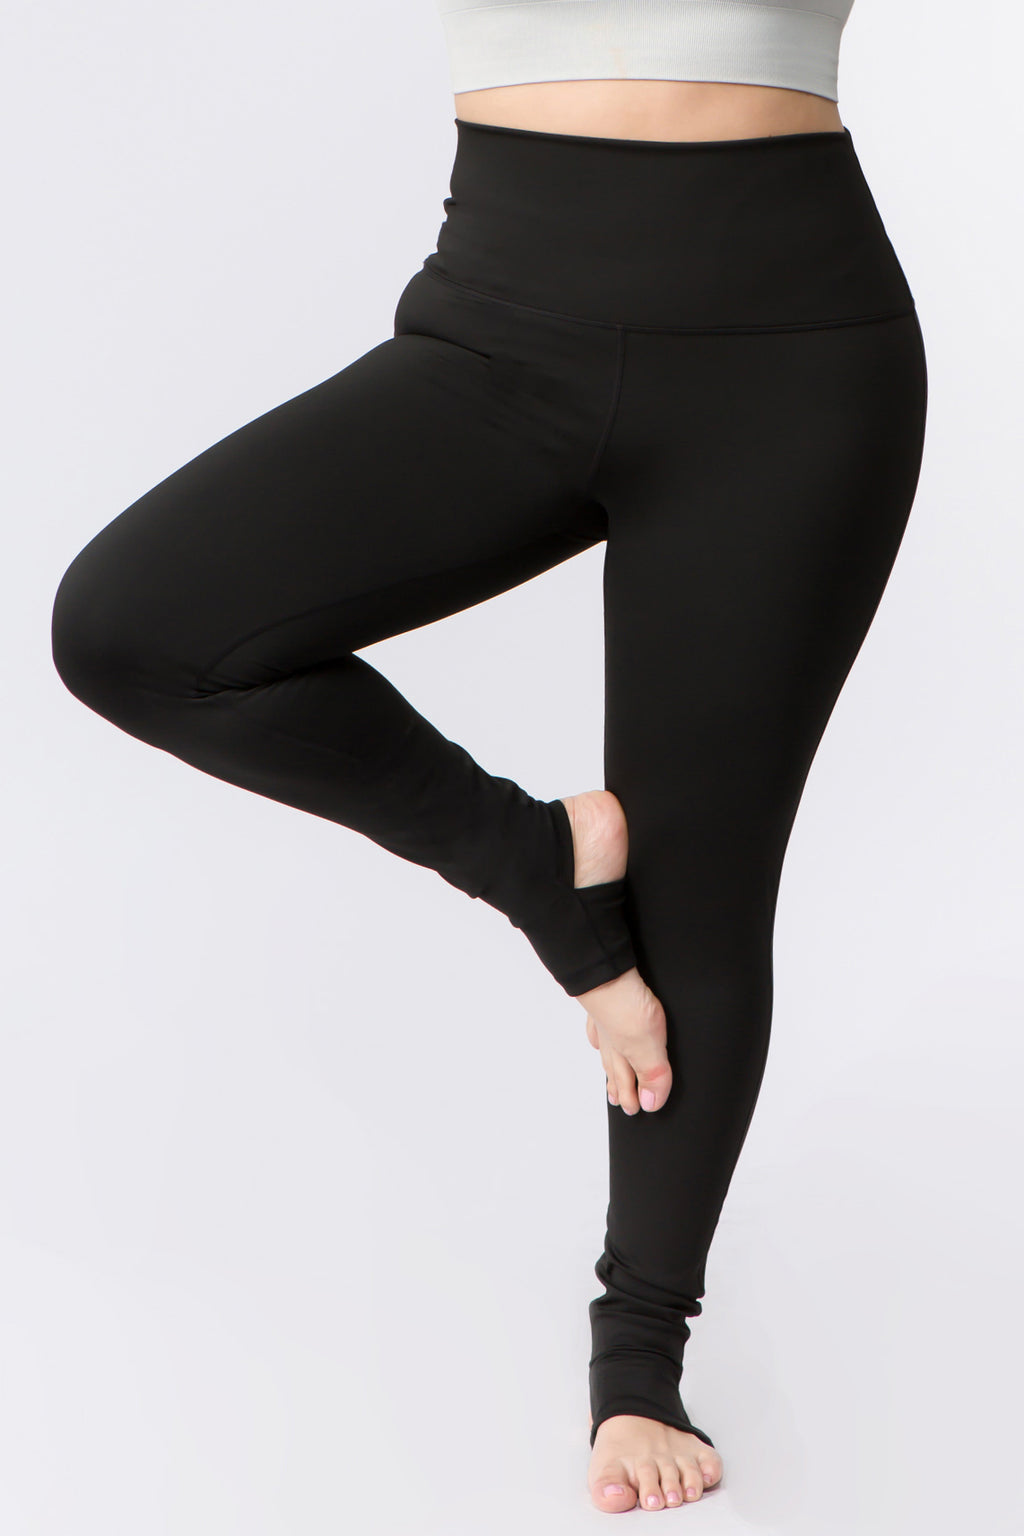 black plus size leggings for women